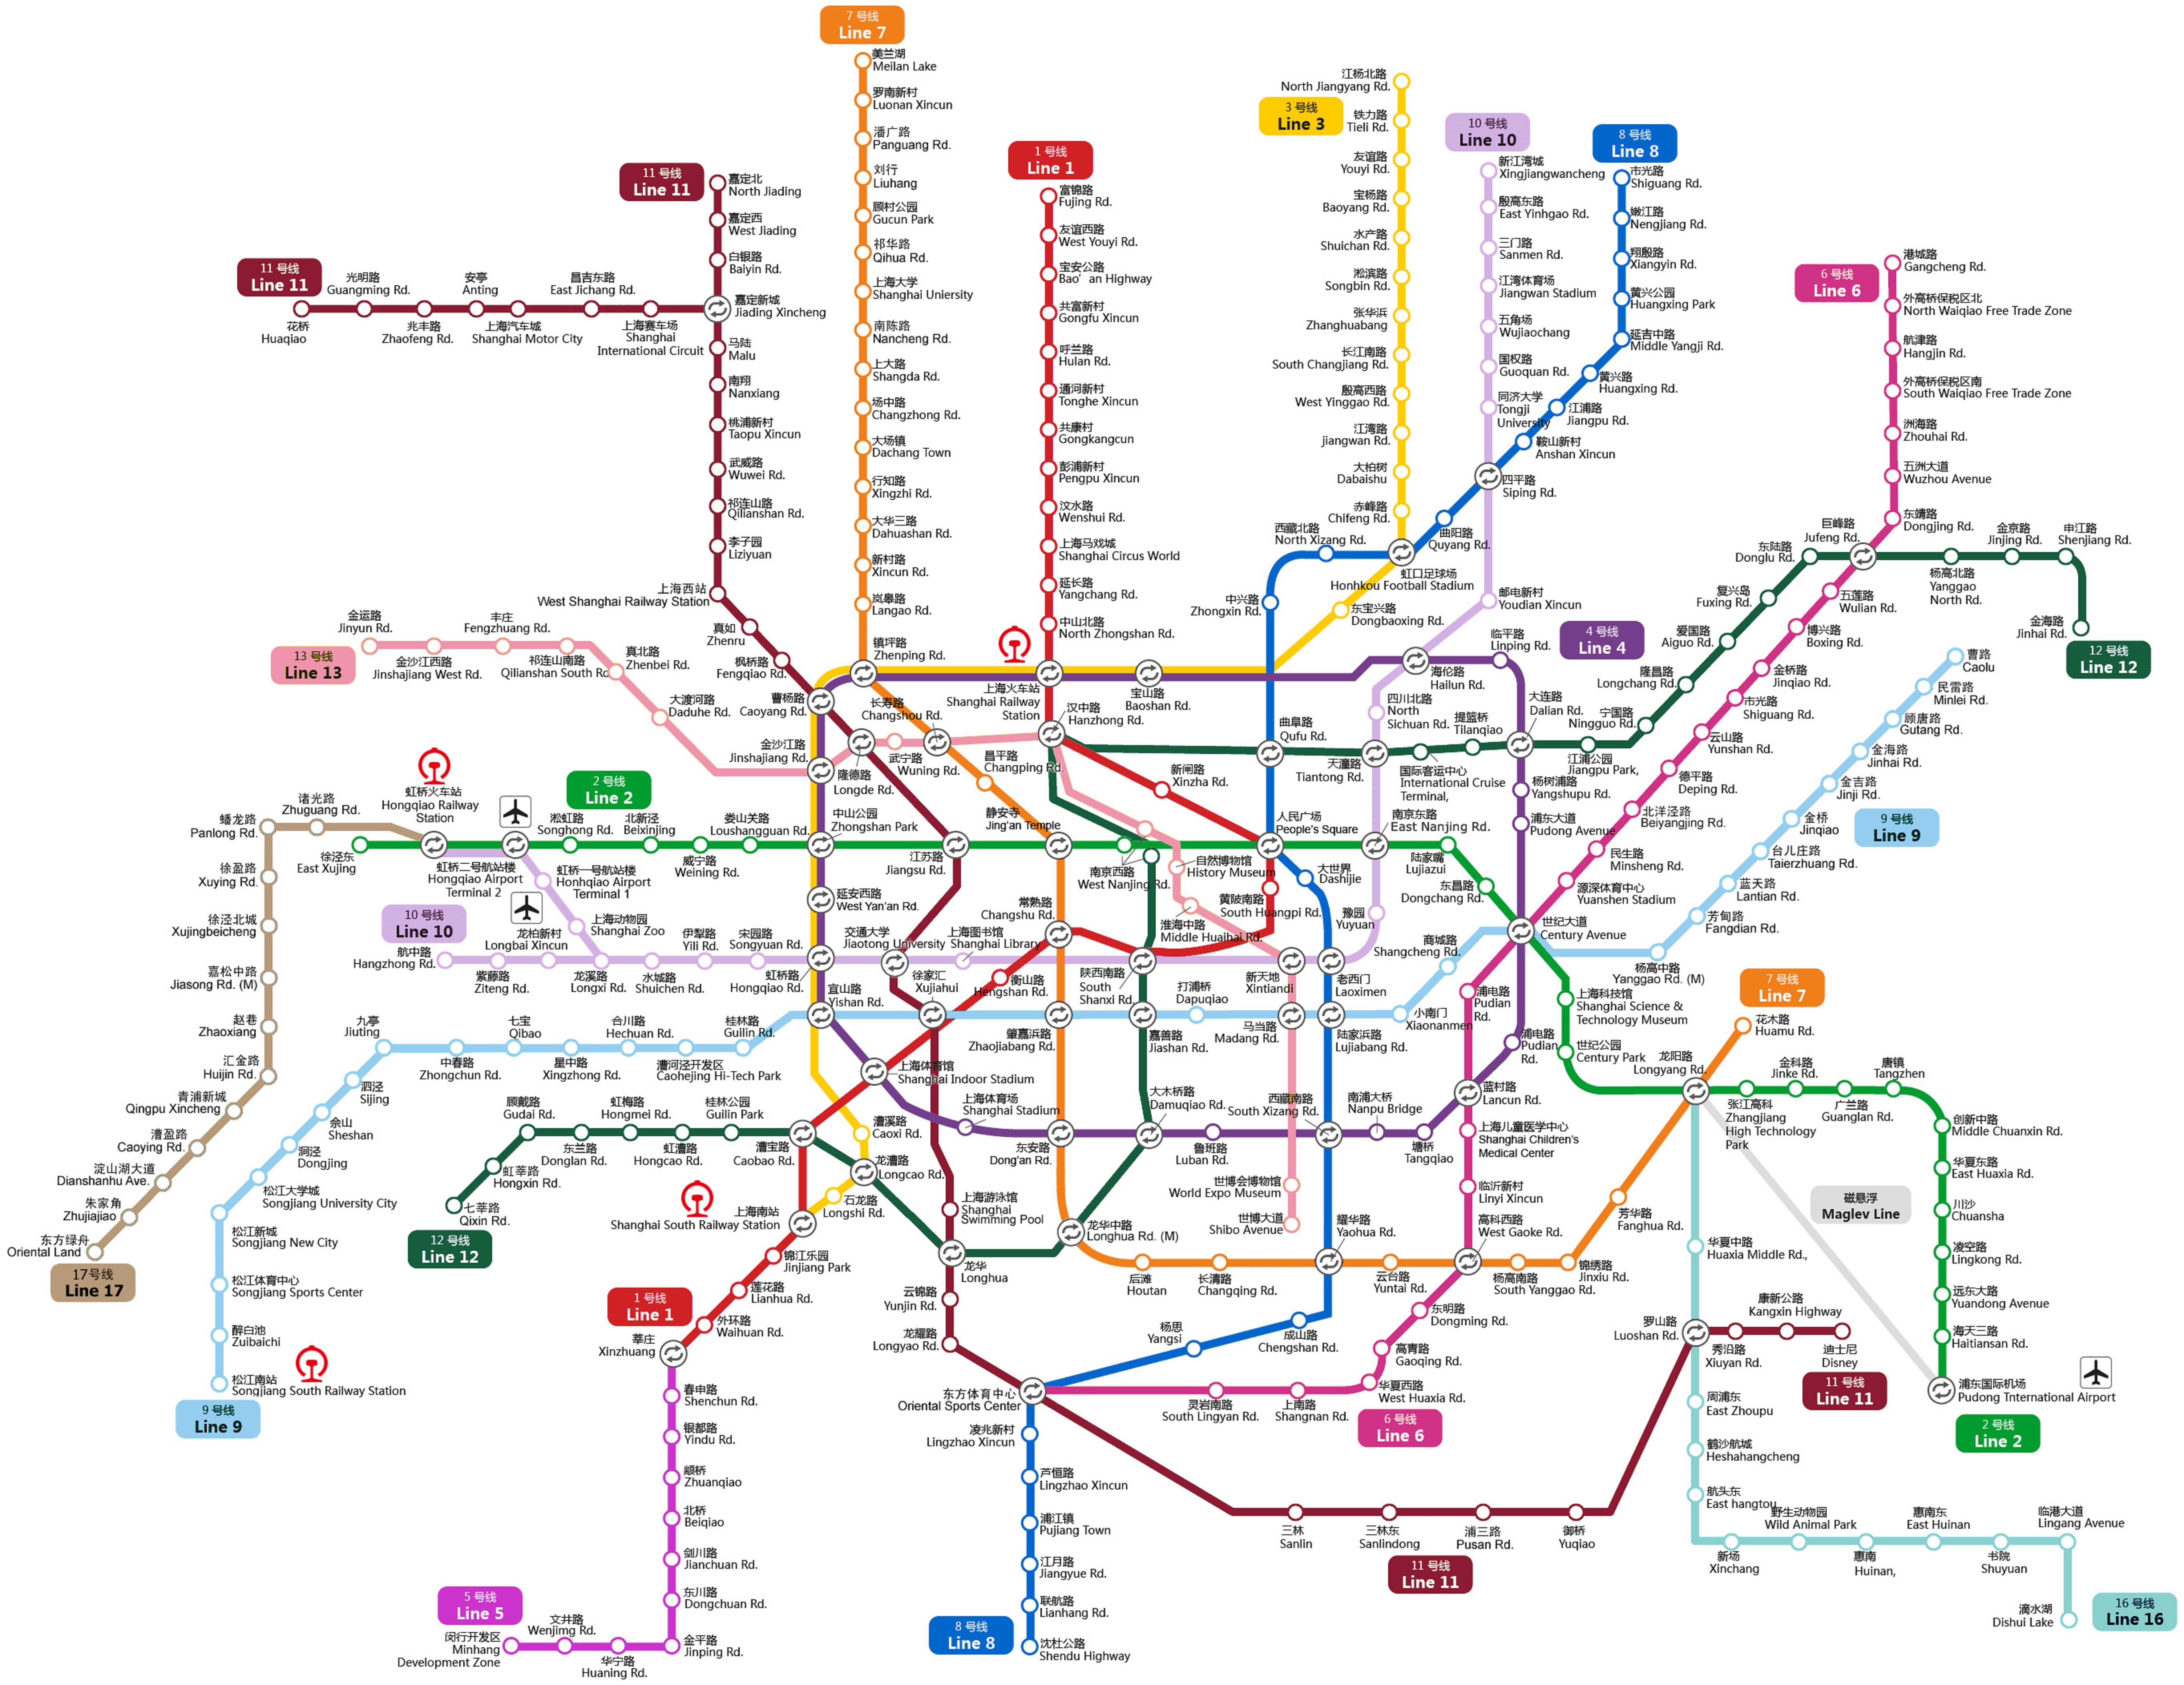 Карта метро Шанхая чем-то похожа на схему московского метрополитена – отдельные линии пересекаются в районе центра. Однако тут нет централизованного кольца, поэтому путешествие из одного конца города в другой может быть неудобным.